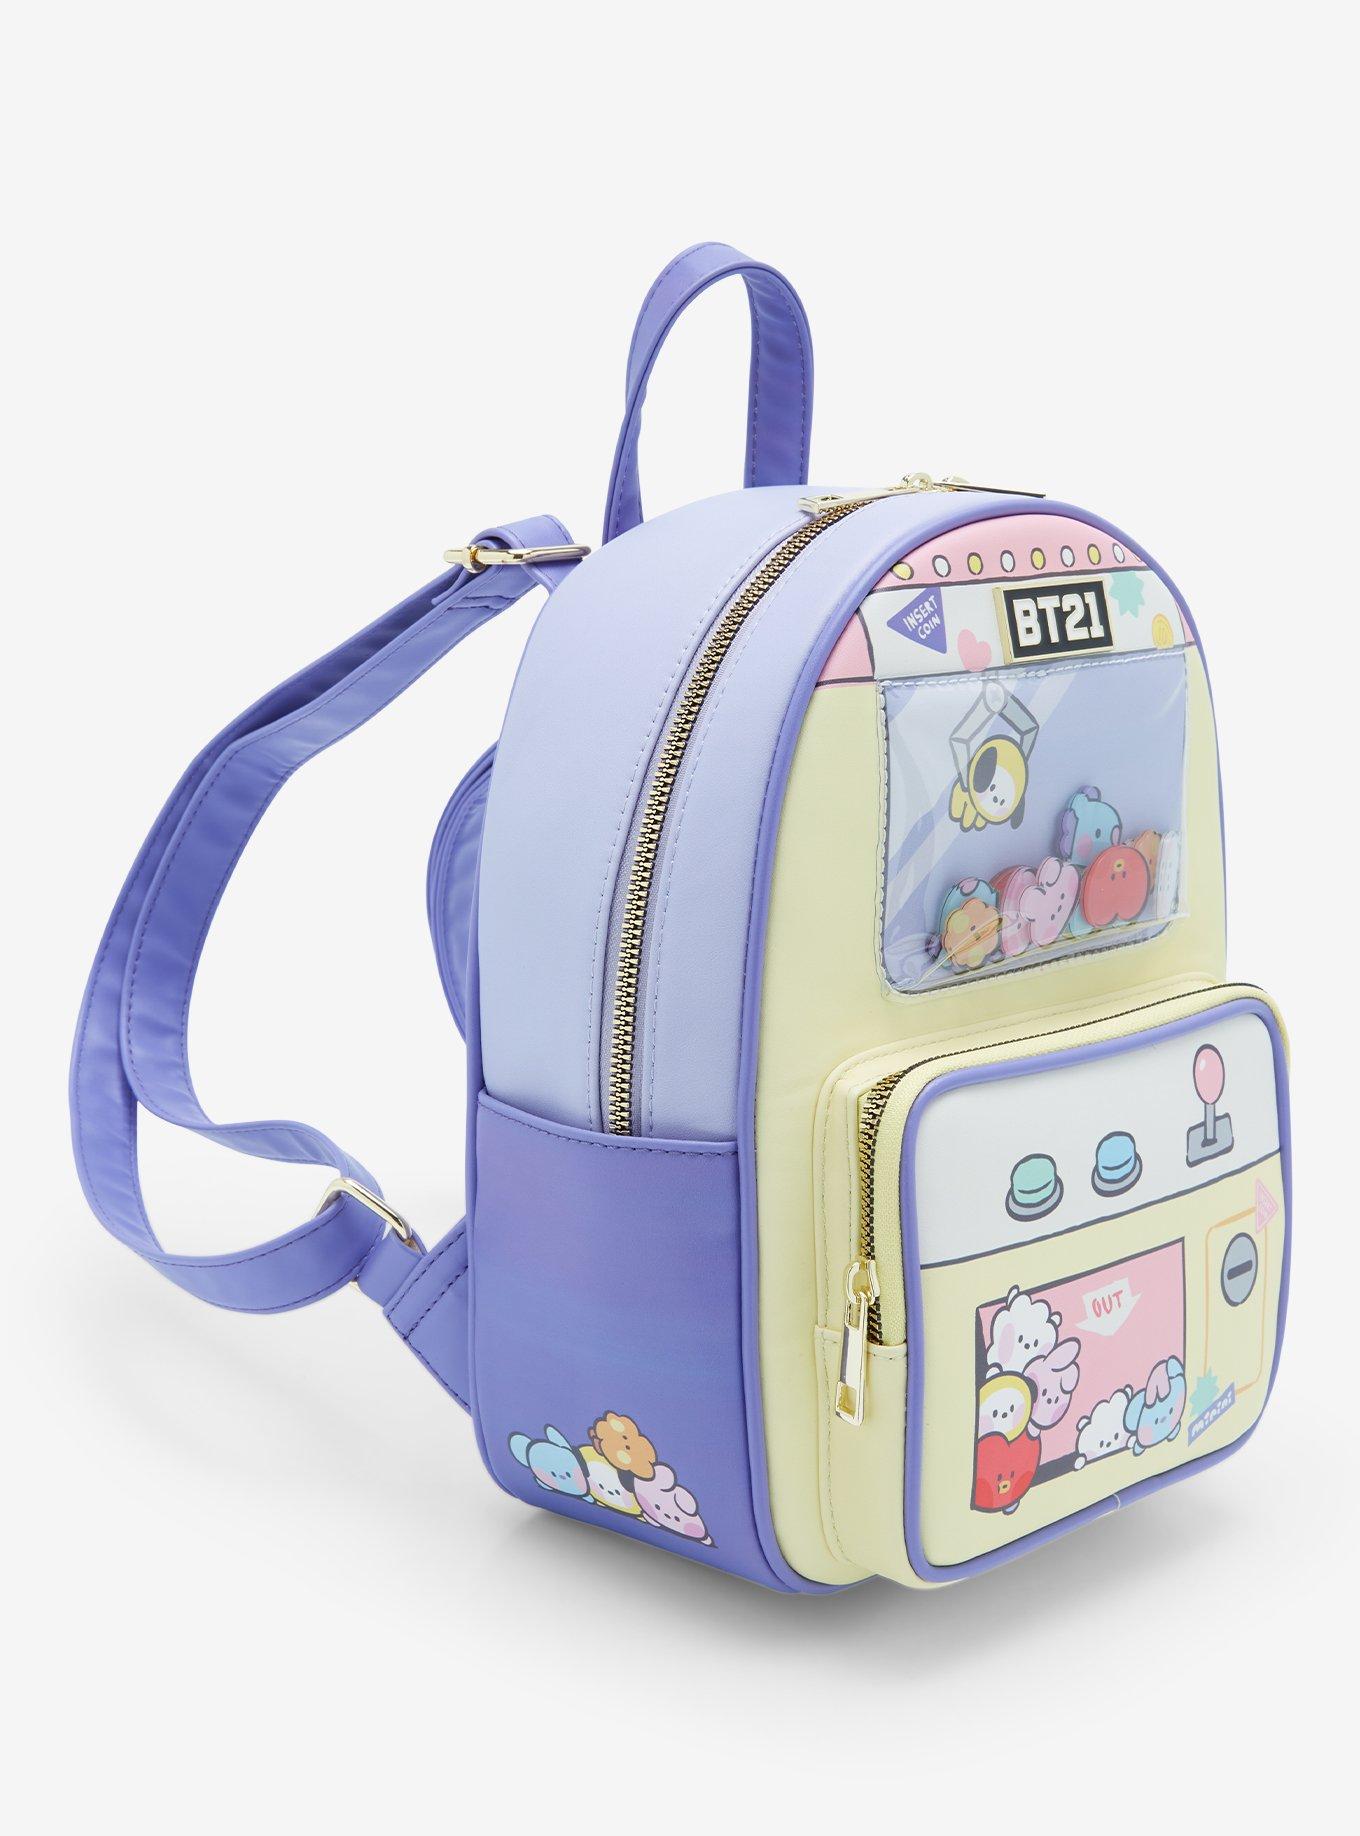 BT21 Claw Machine Mini Backpack